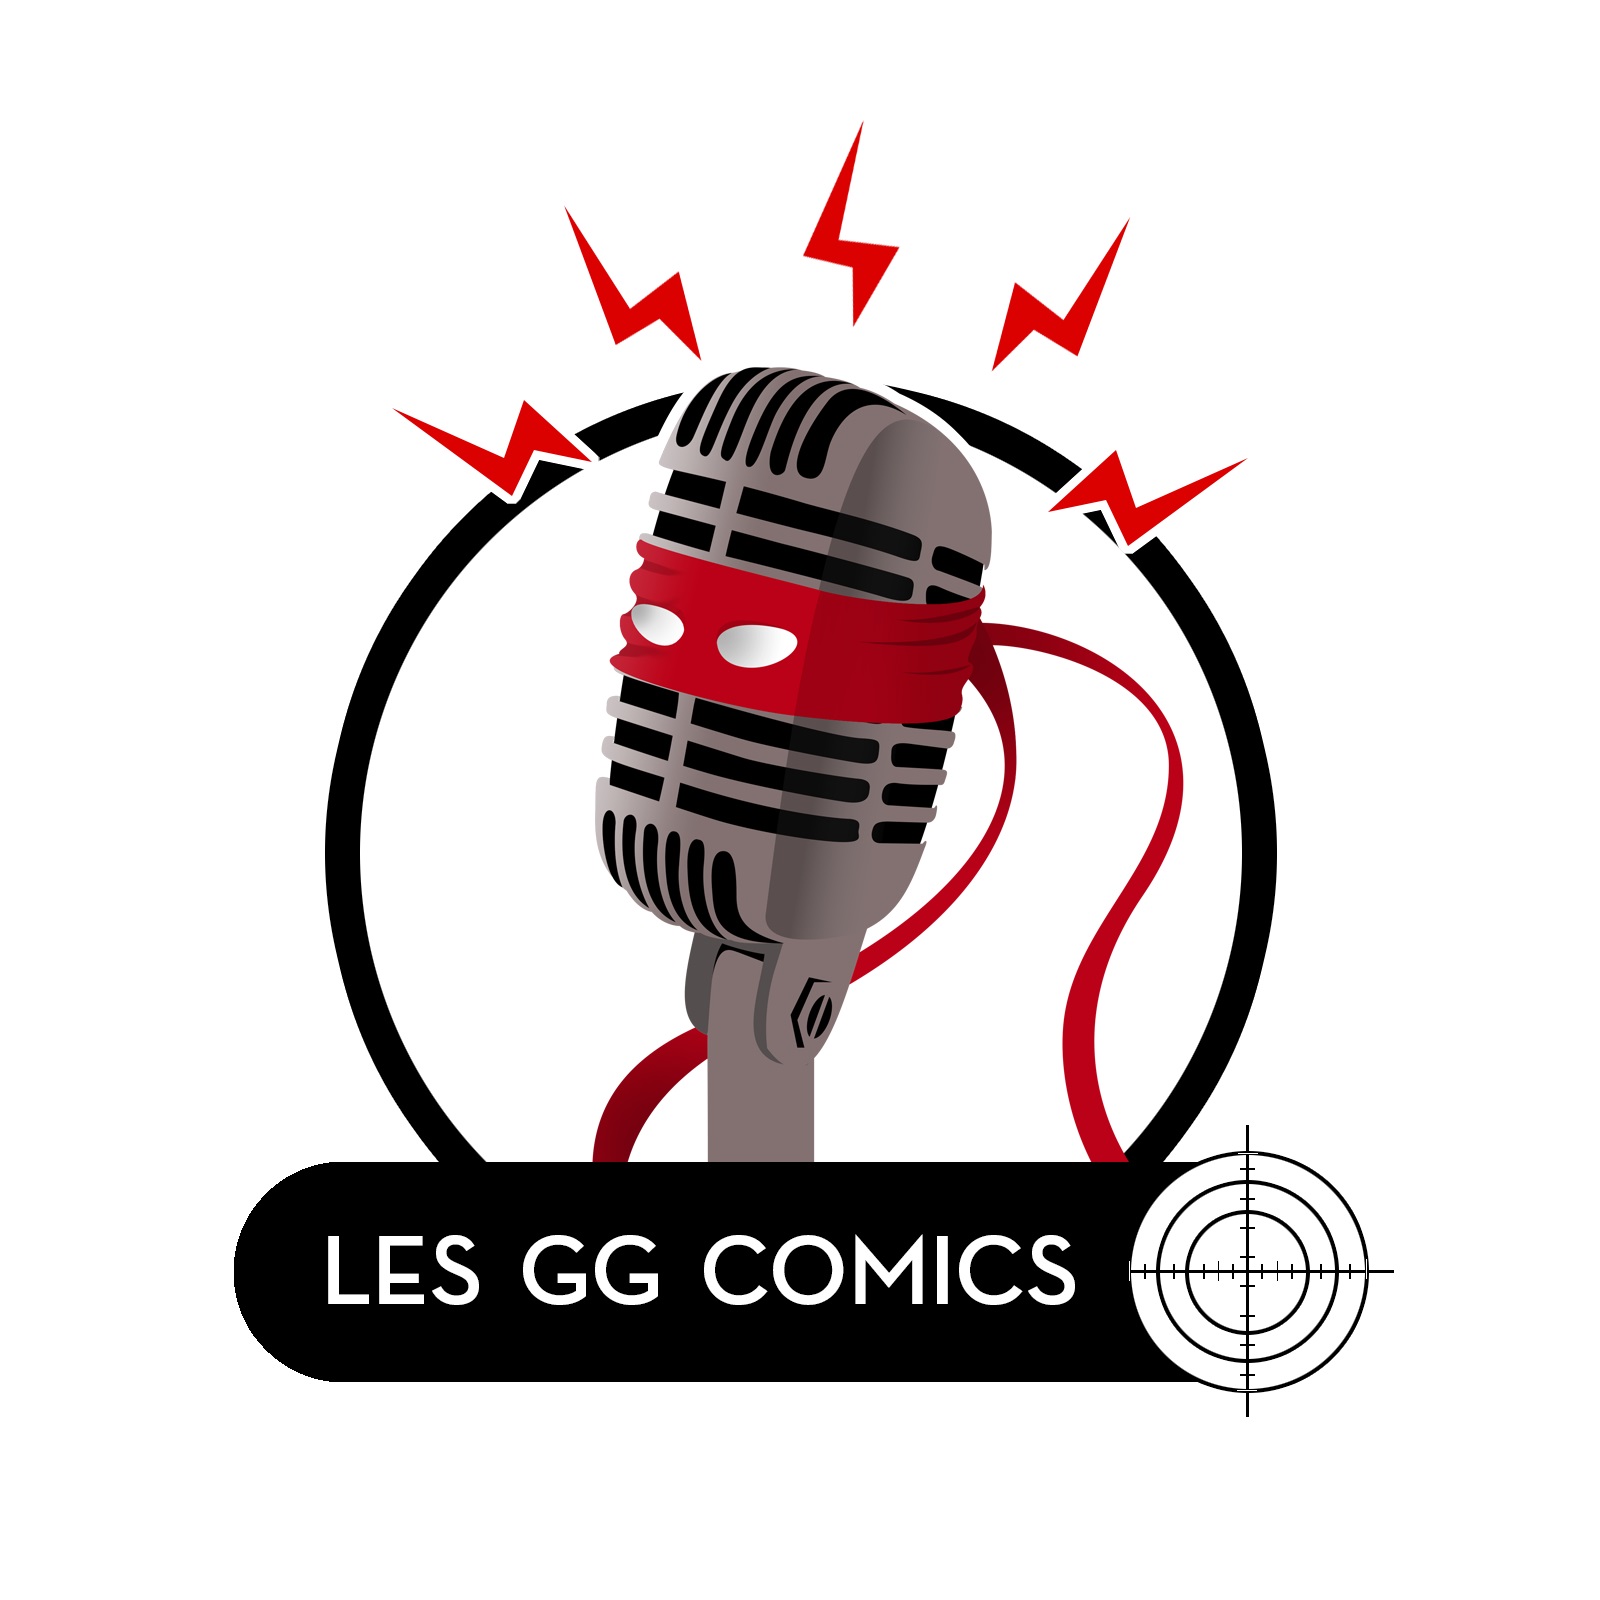 Les GG comics #059 : Bilan comics 2020